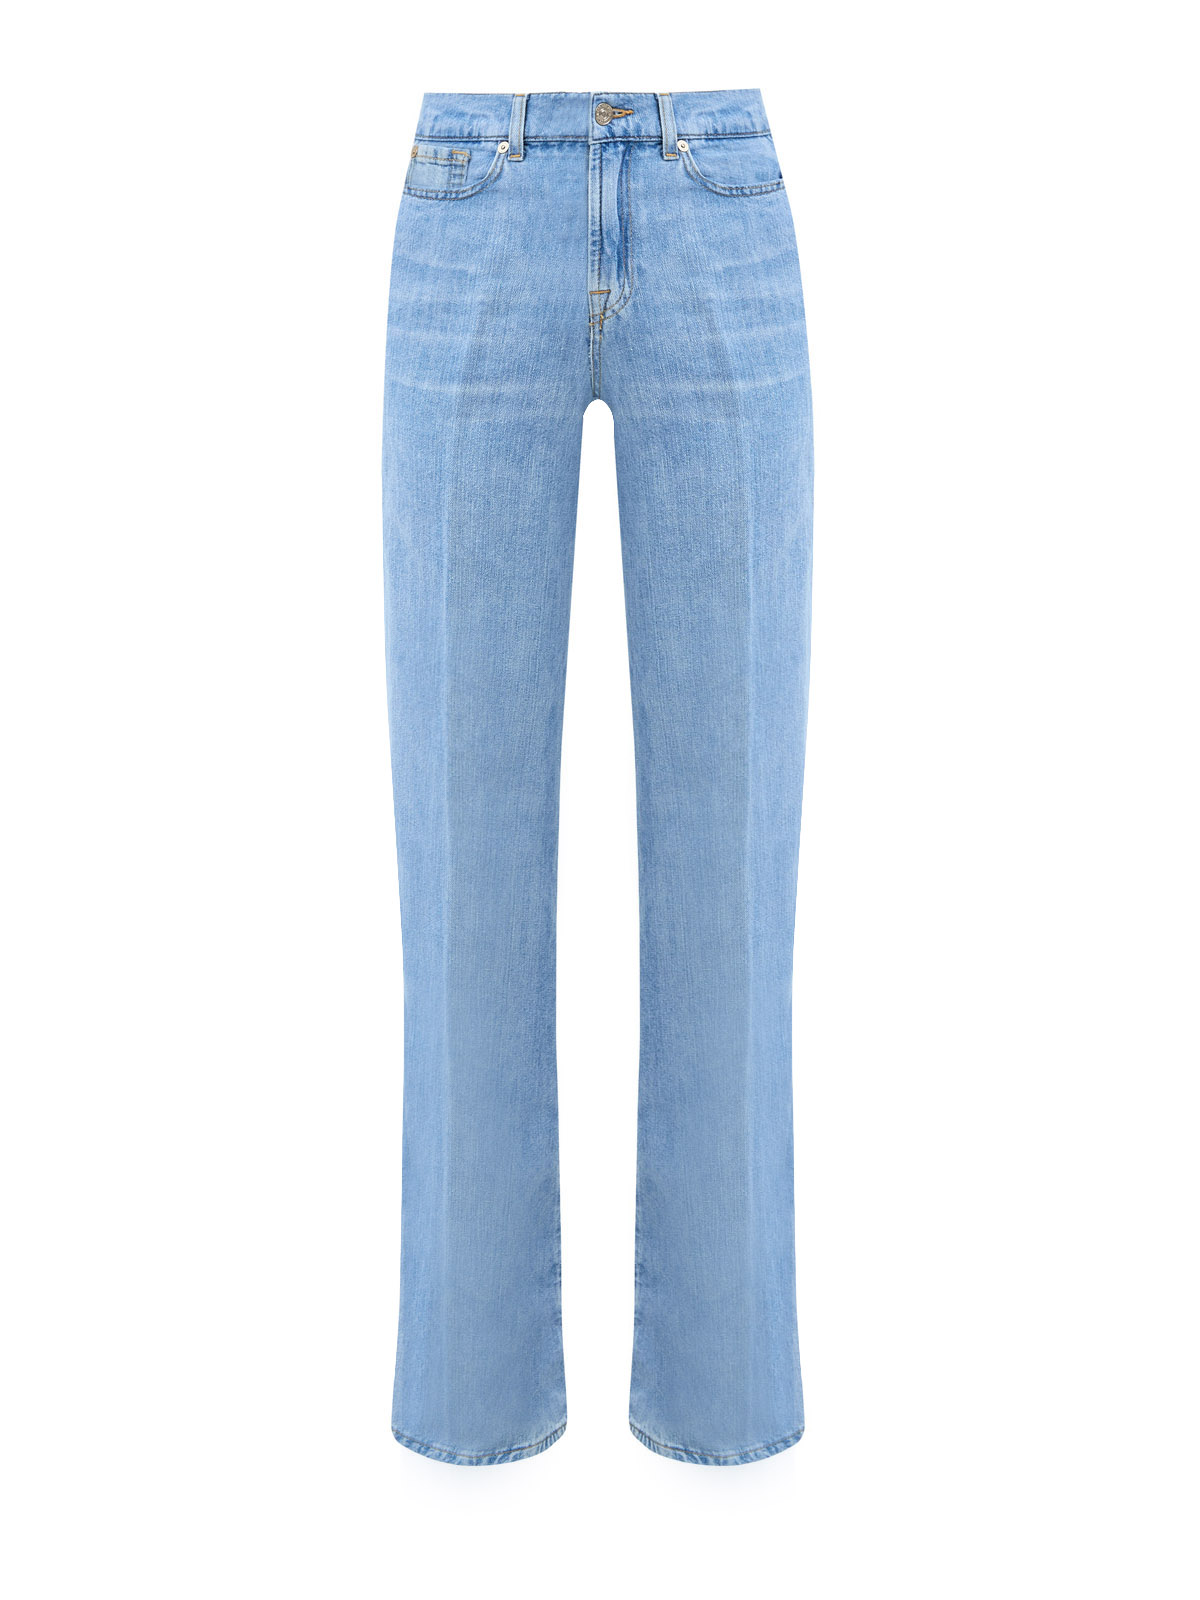 Расклешенные джинсы Lotta в стиле 70-х из выбеленного денима 7 FOR ALL MANKIND, цвет голубой, размер XS;S;S